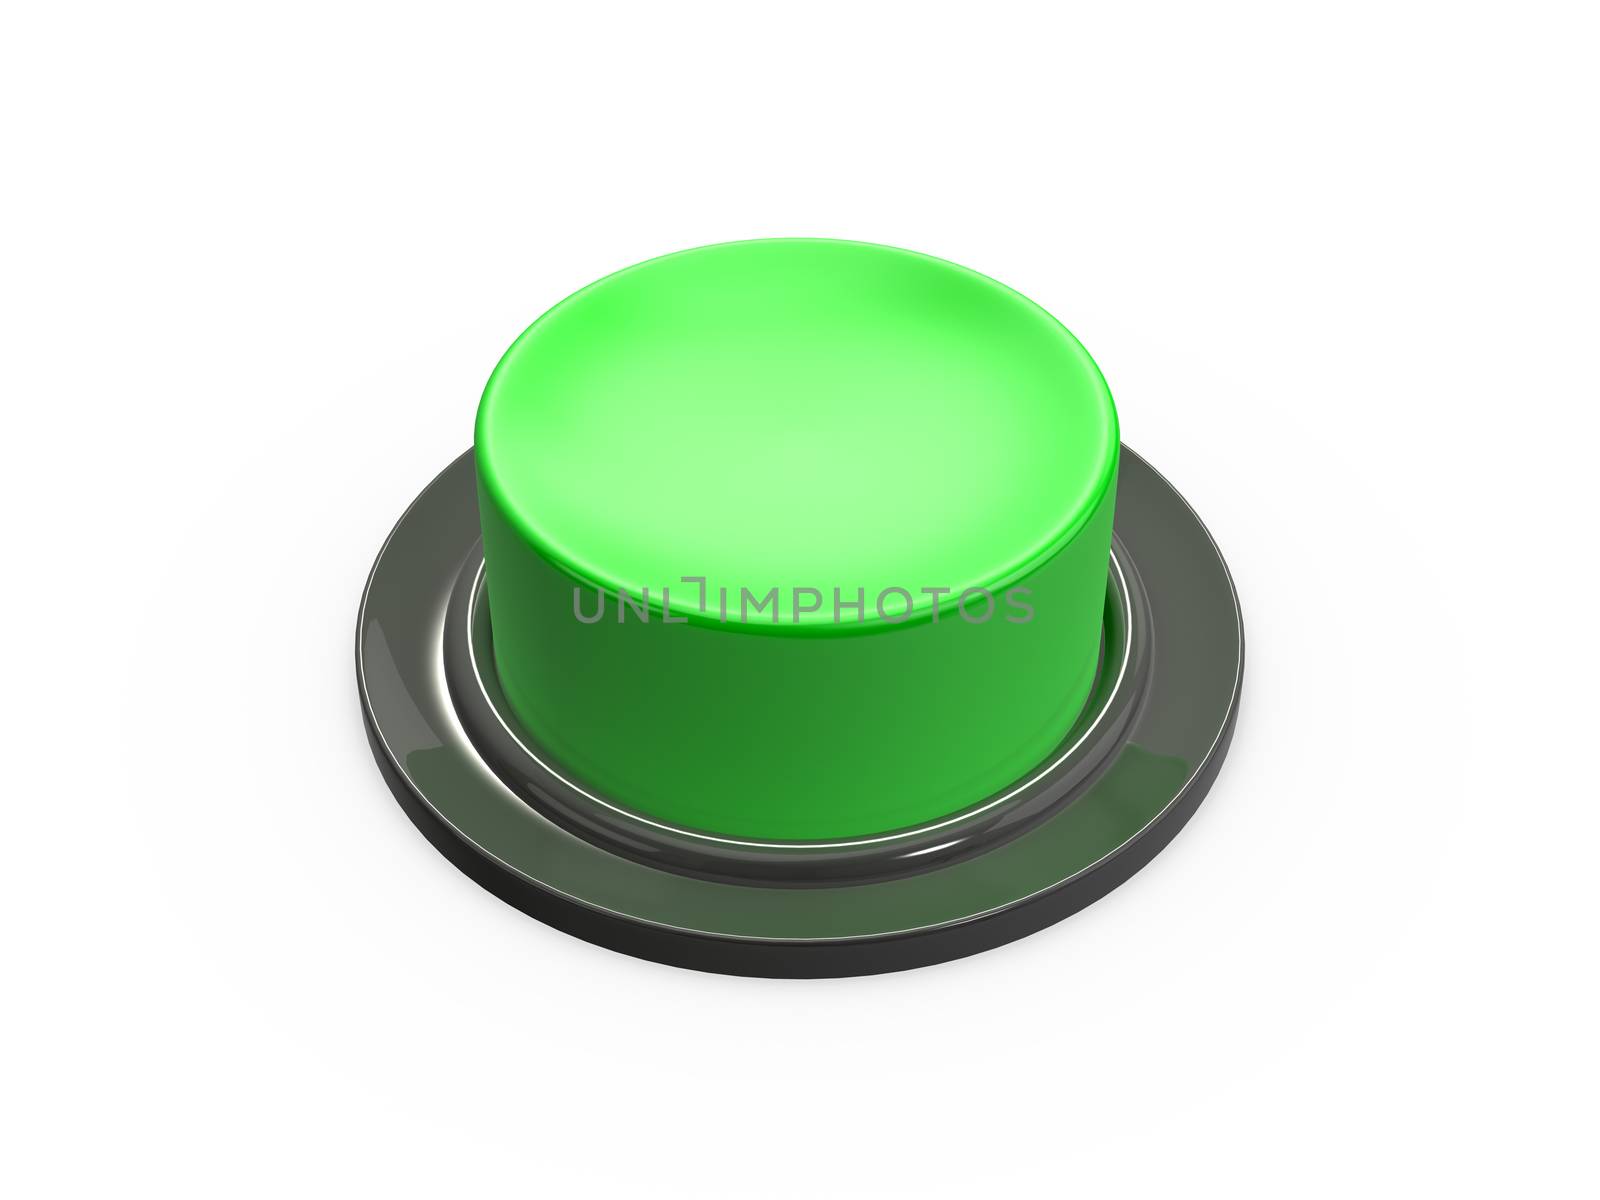 Blank Green Button by niglaynike